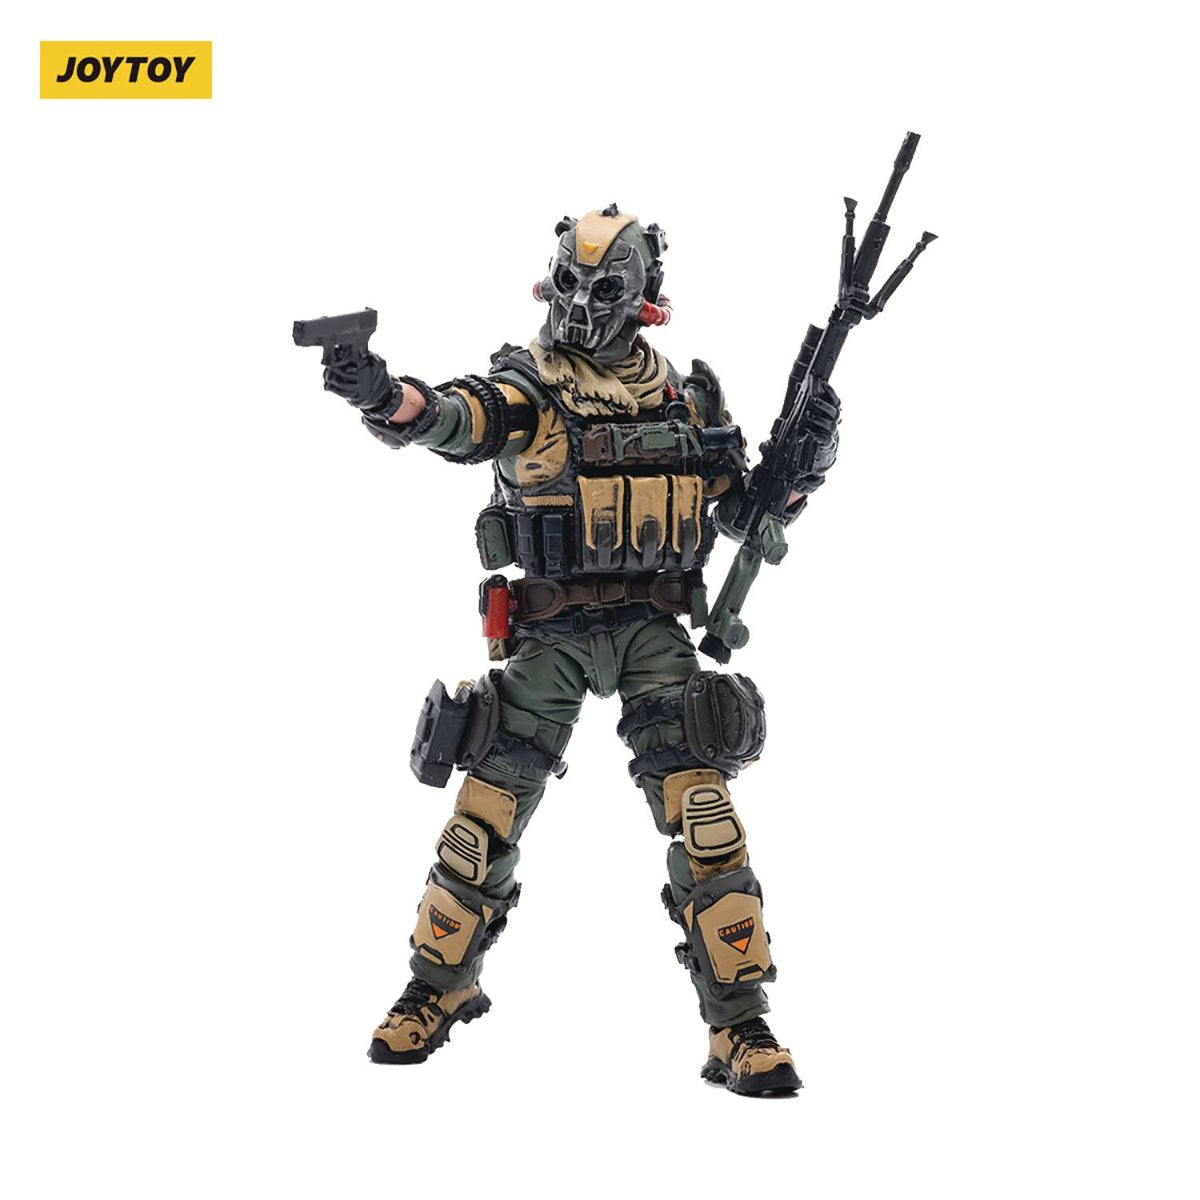 Joy Toy Spartan Squad Soldier 03 1:18 Scale Action Figure